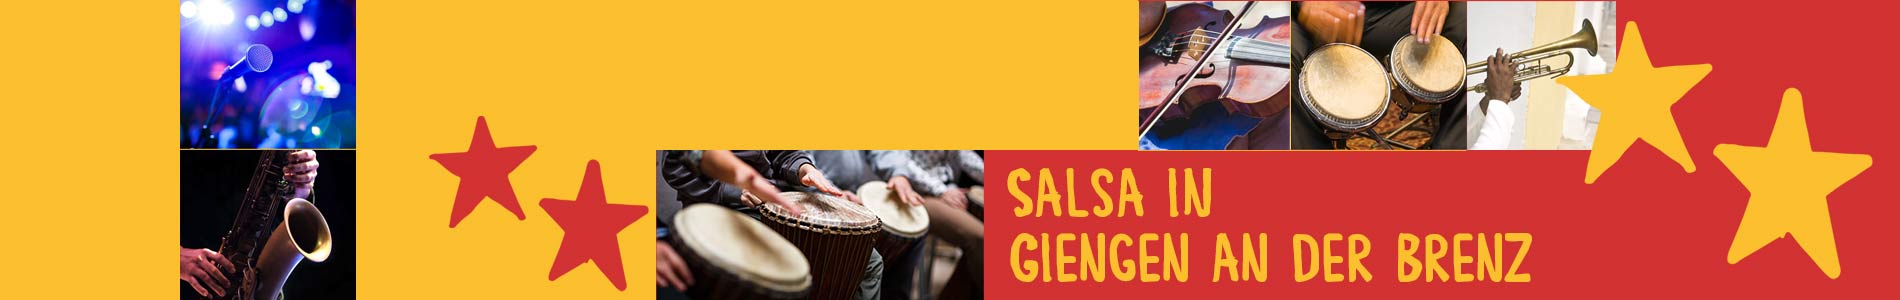 Salsa in Giengen an der Brenz – Salsa lernen und tanzen, Tanzkurse, Partys, Veranstaltungen